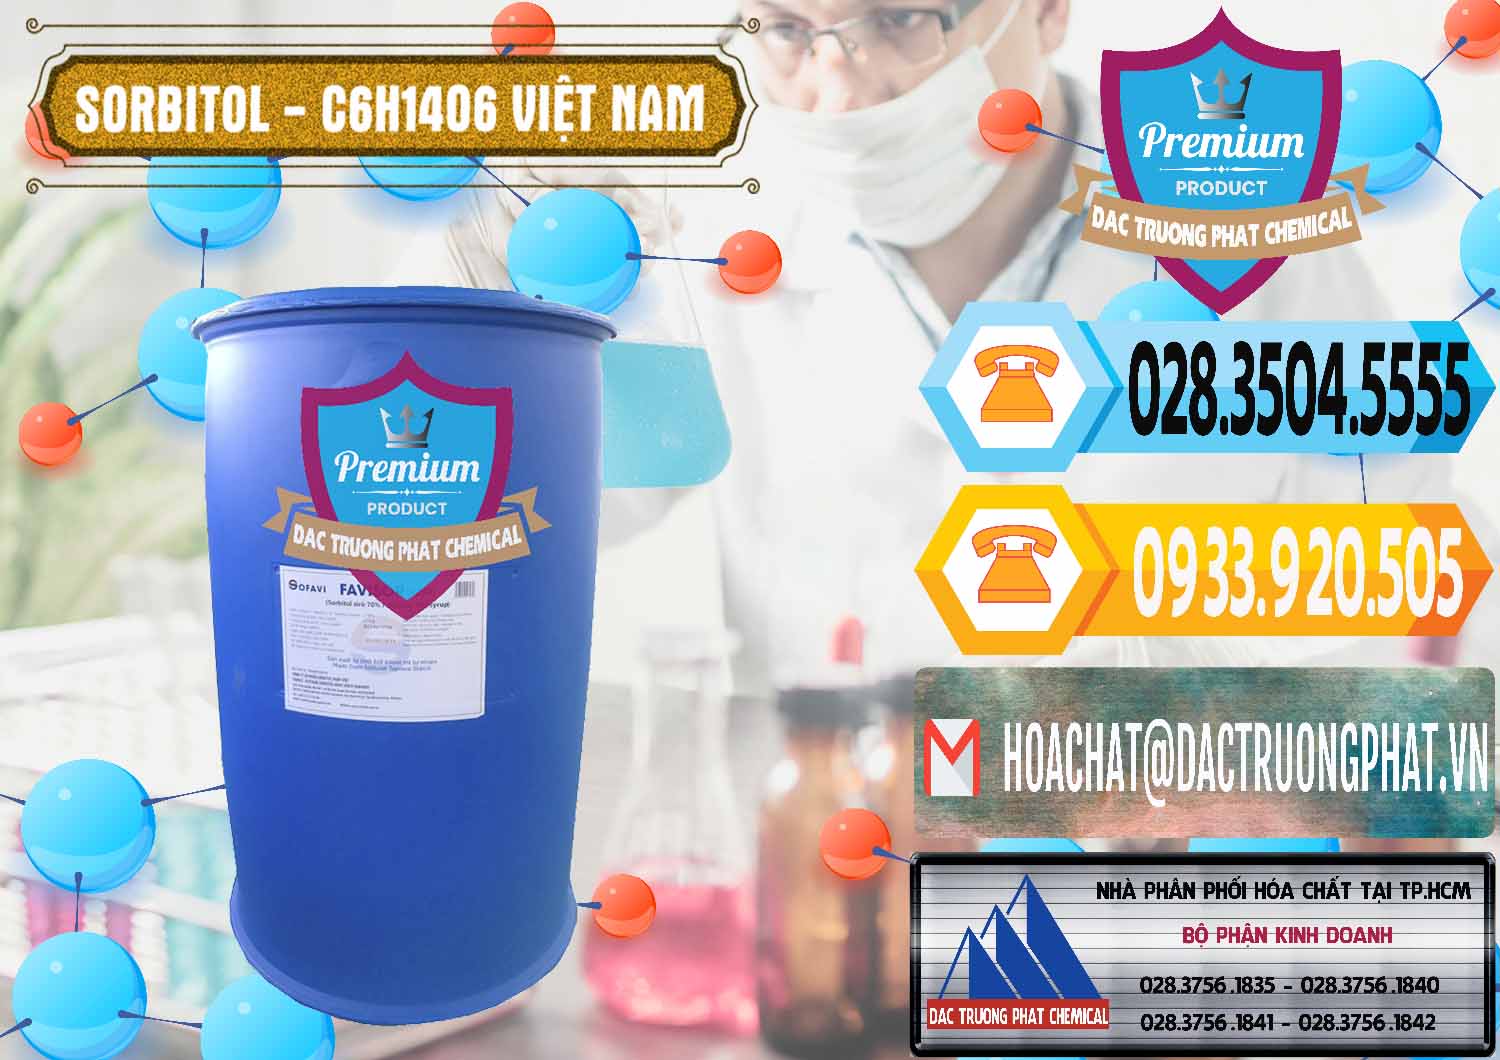 Cty chuyên bán - cung cấp Sorbitol - C6H14O6 Lỏng 70% Food Grade Việt Nam - 0438 - Phân phối & bán hóa chất tại TP.HCM - hoachattayrua.net